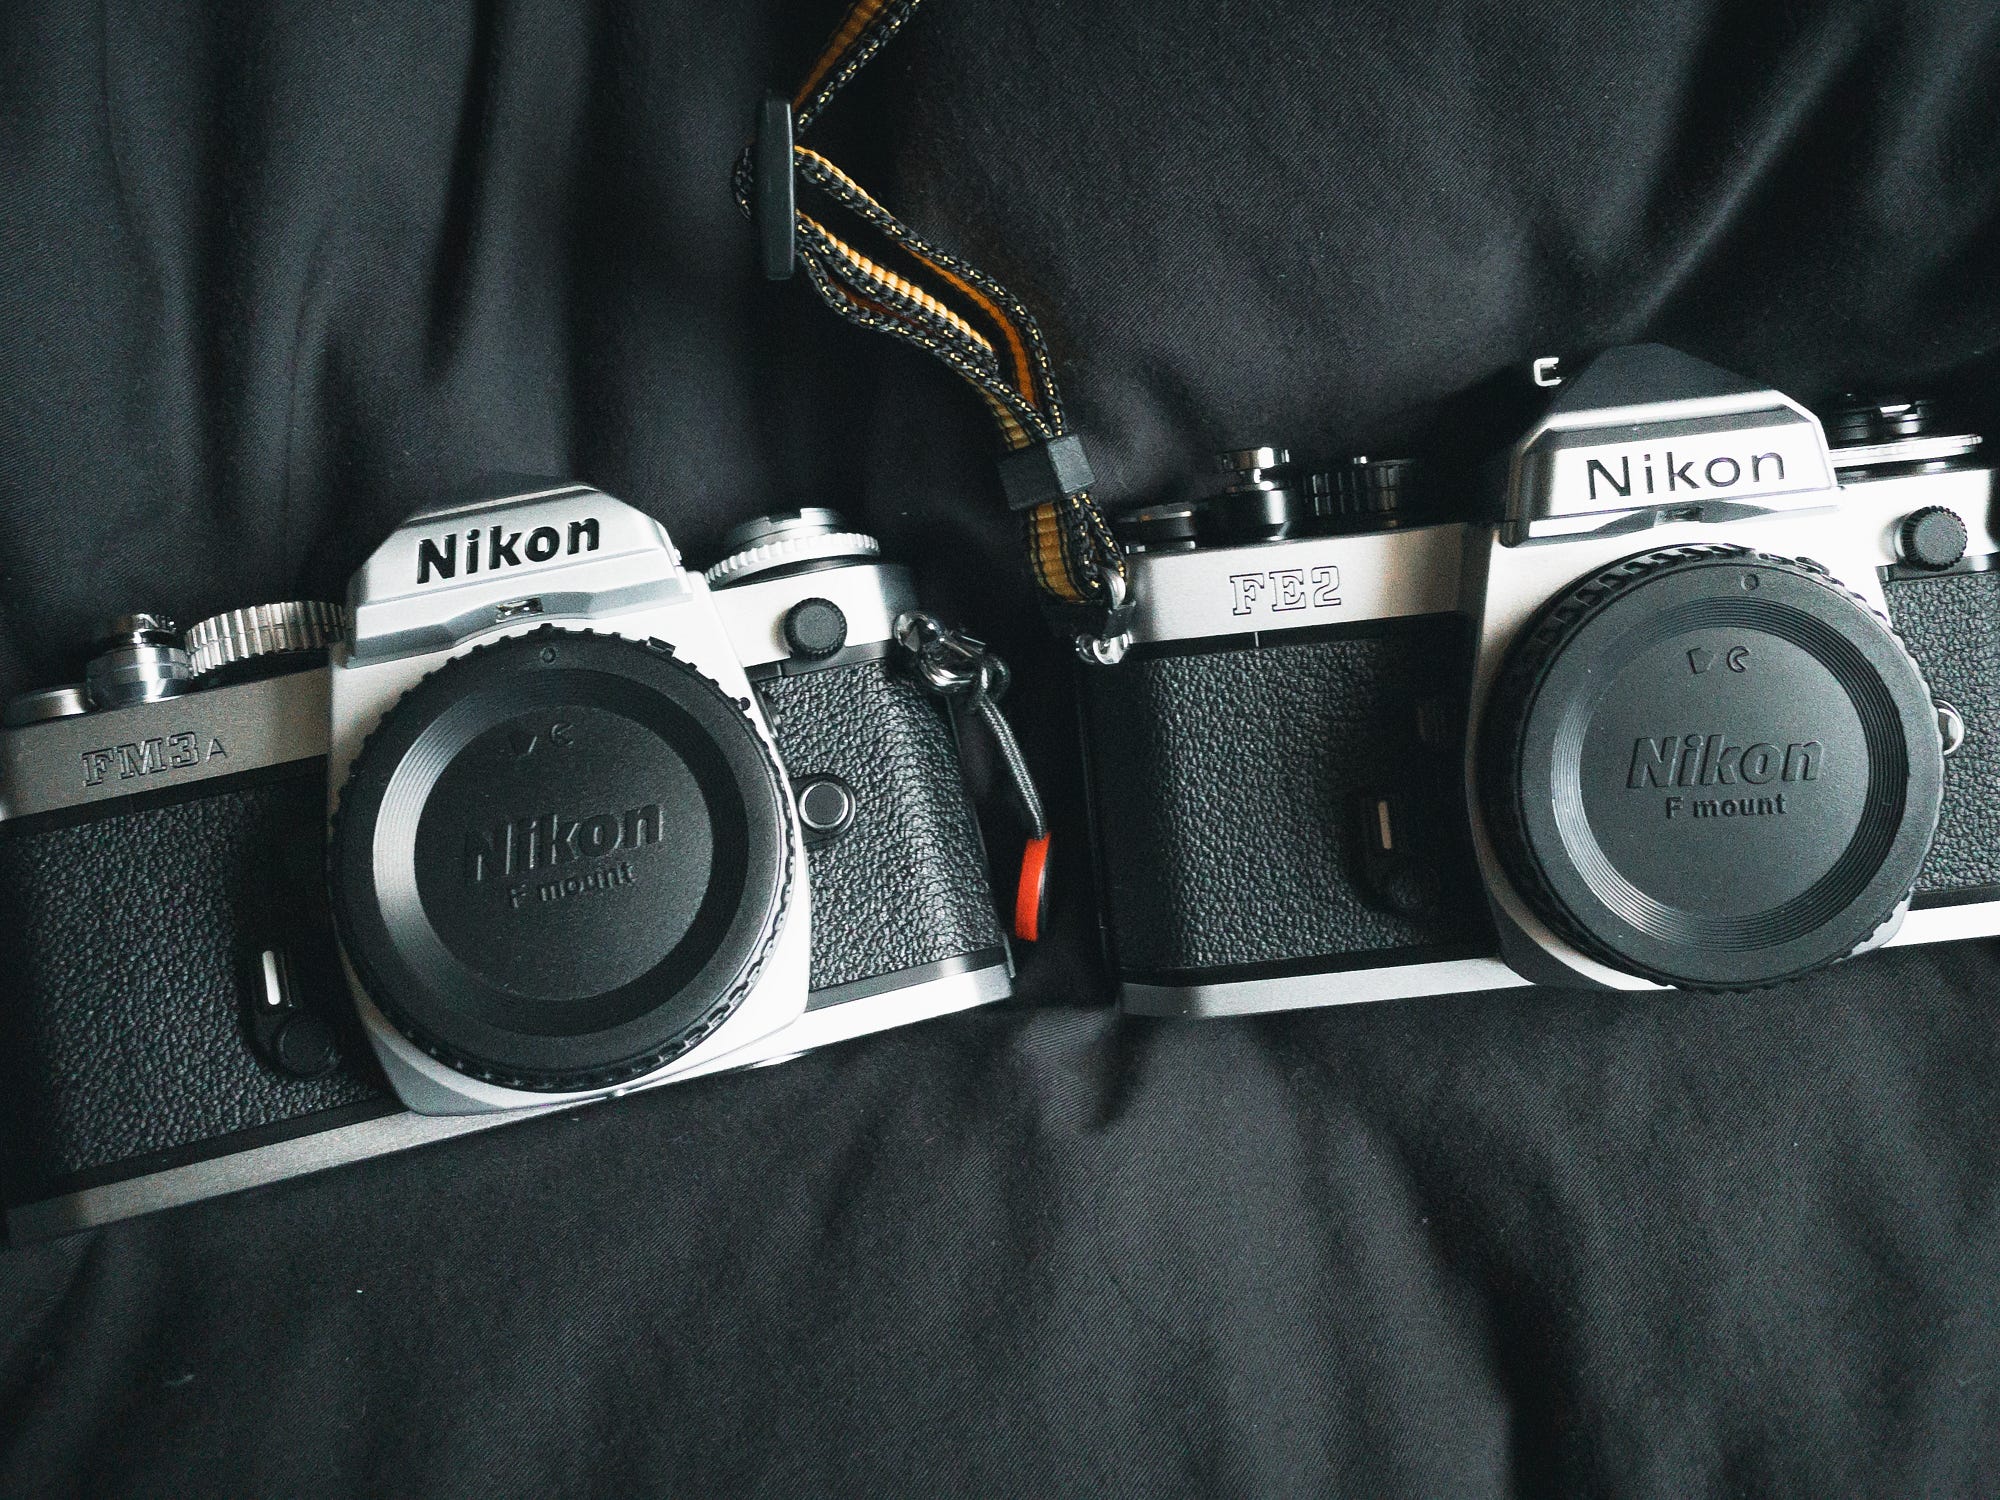 Nikon FE2とFM3Aの外観比較 / Appearance comparison of Nikon FE2 and 